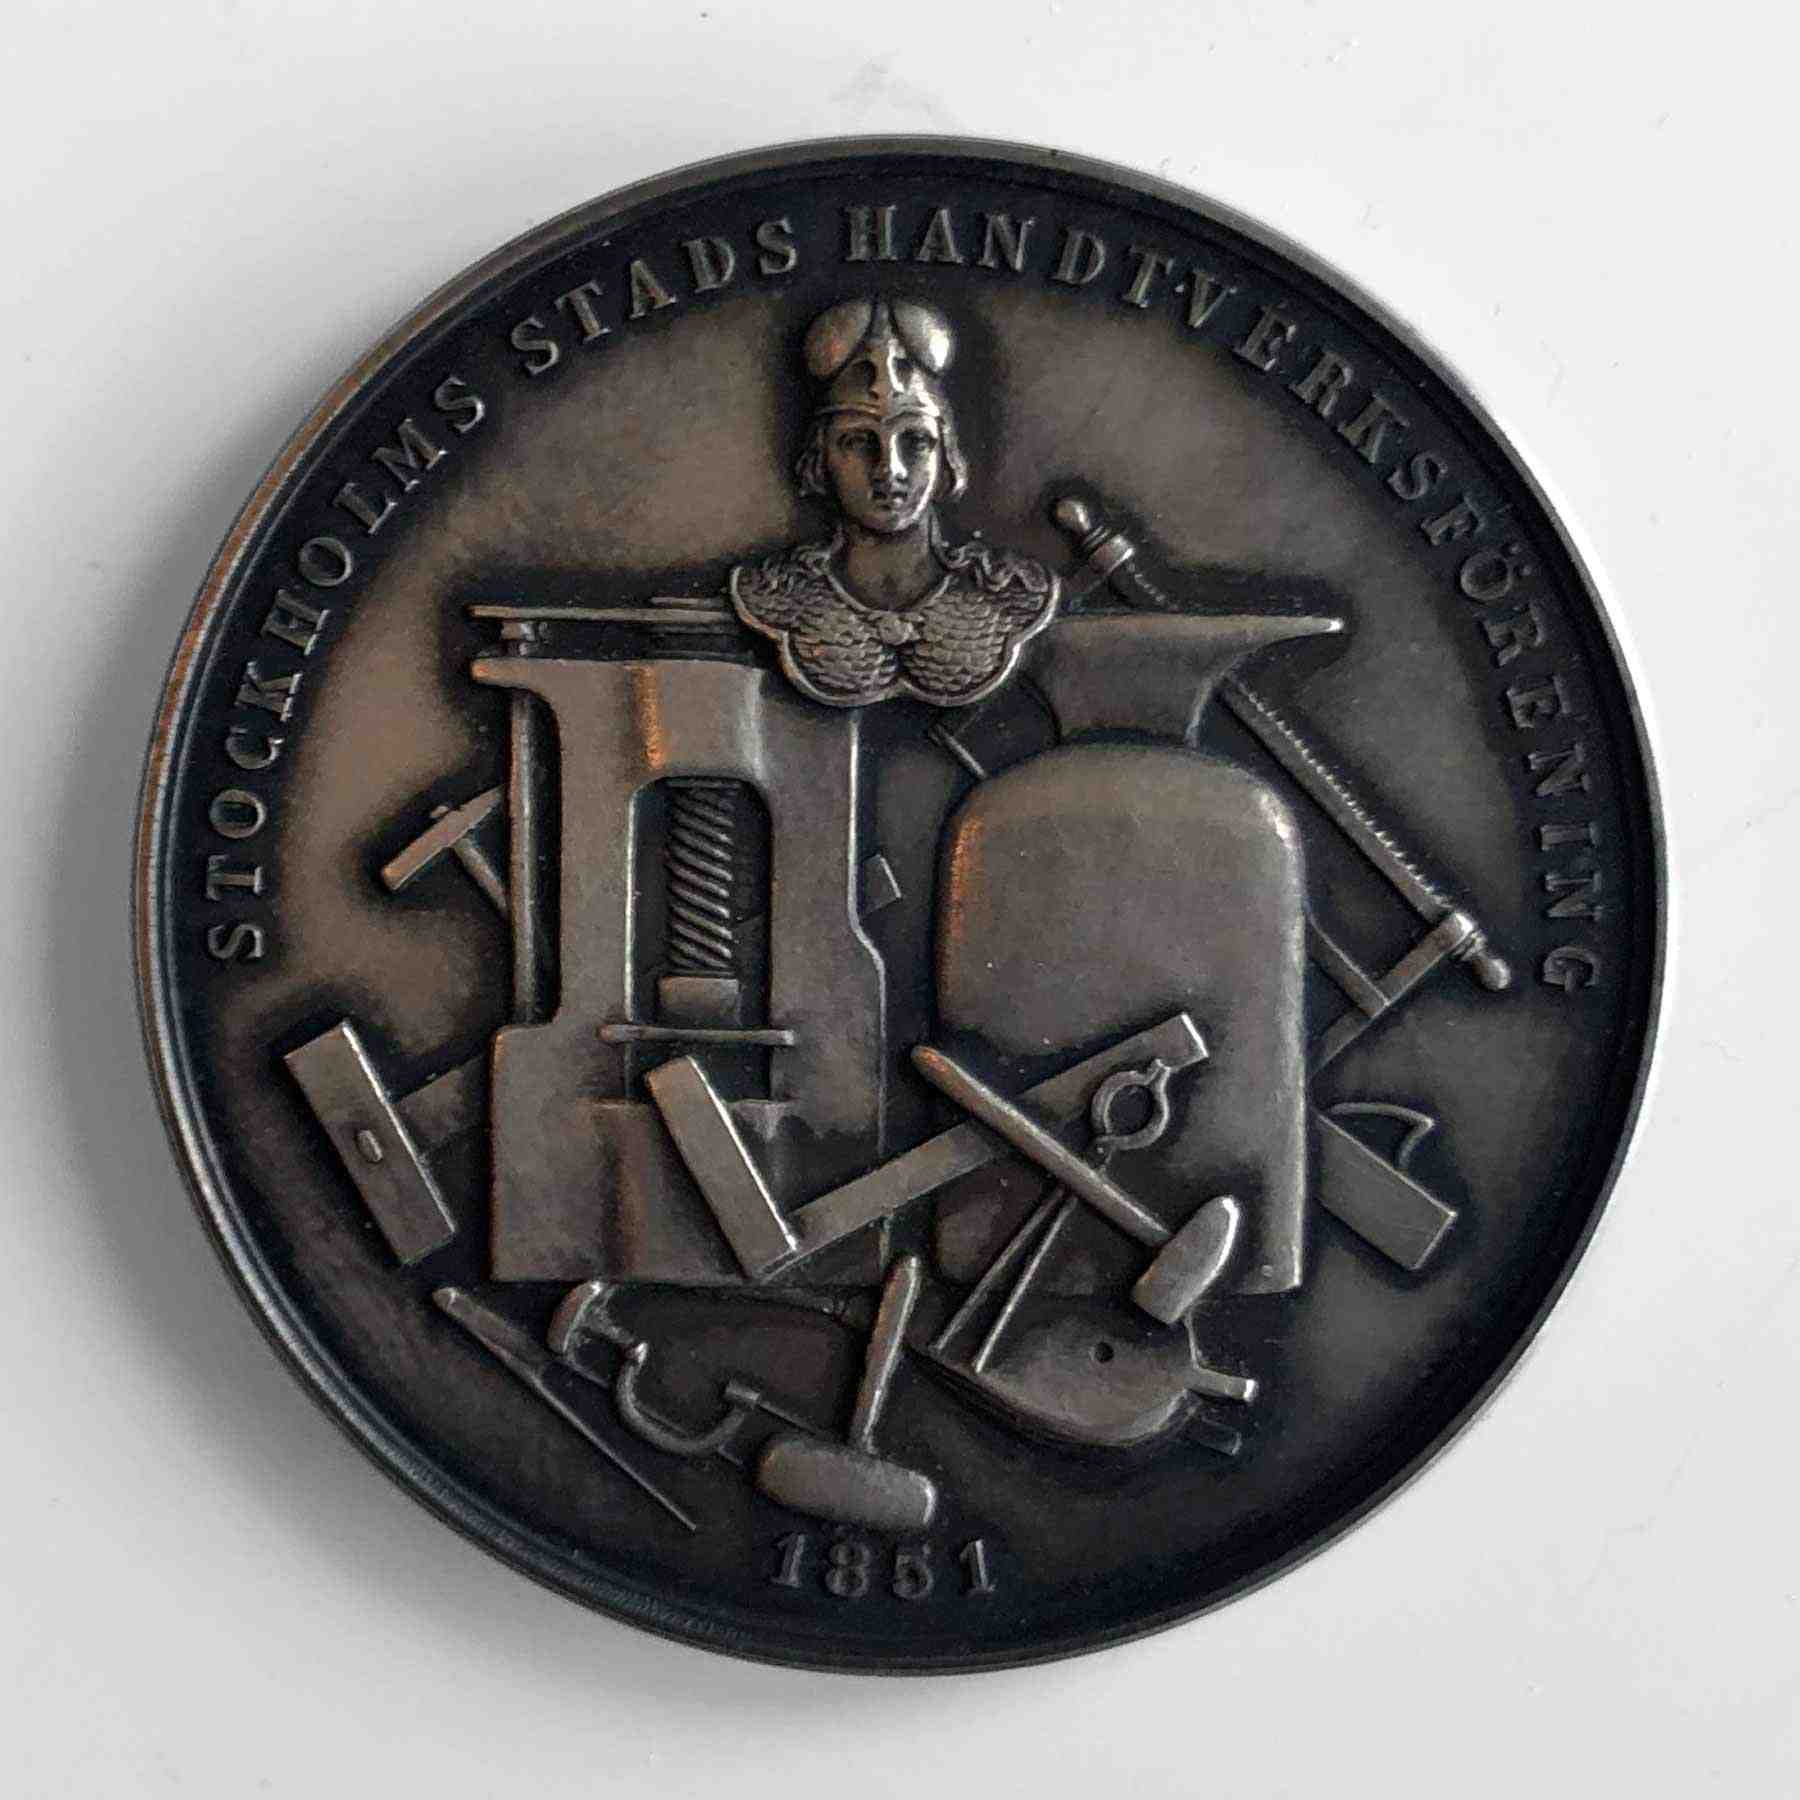 Stockholms Stads Hantverksförenings medalj, 1956